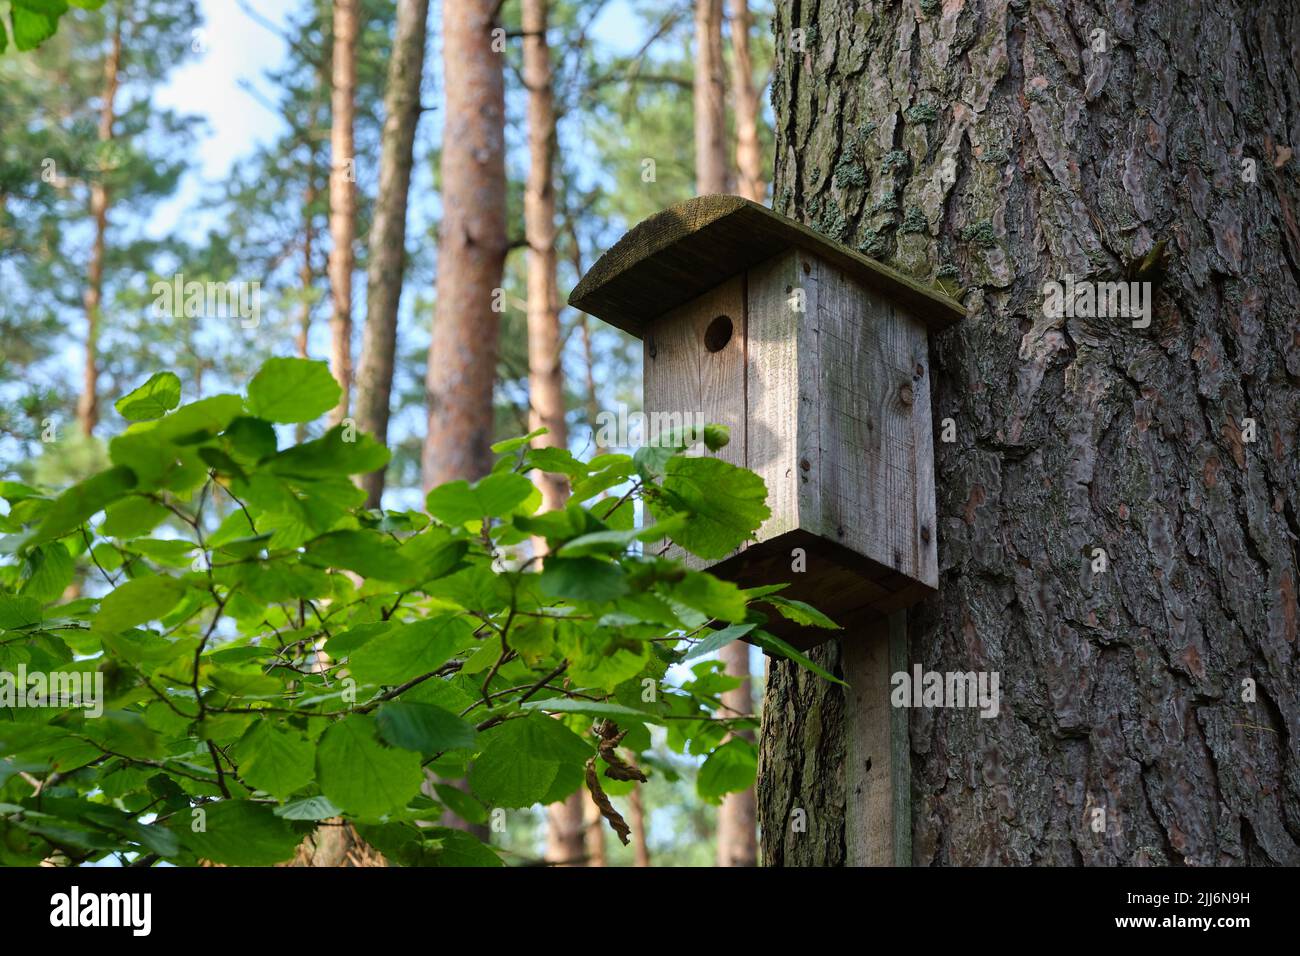 Casa de pájaros en un árbol viejo. Pajarera de madera, caja de anidación para pájaros cantores en parque o bosque. Foto de stock